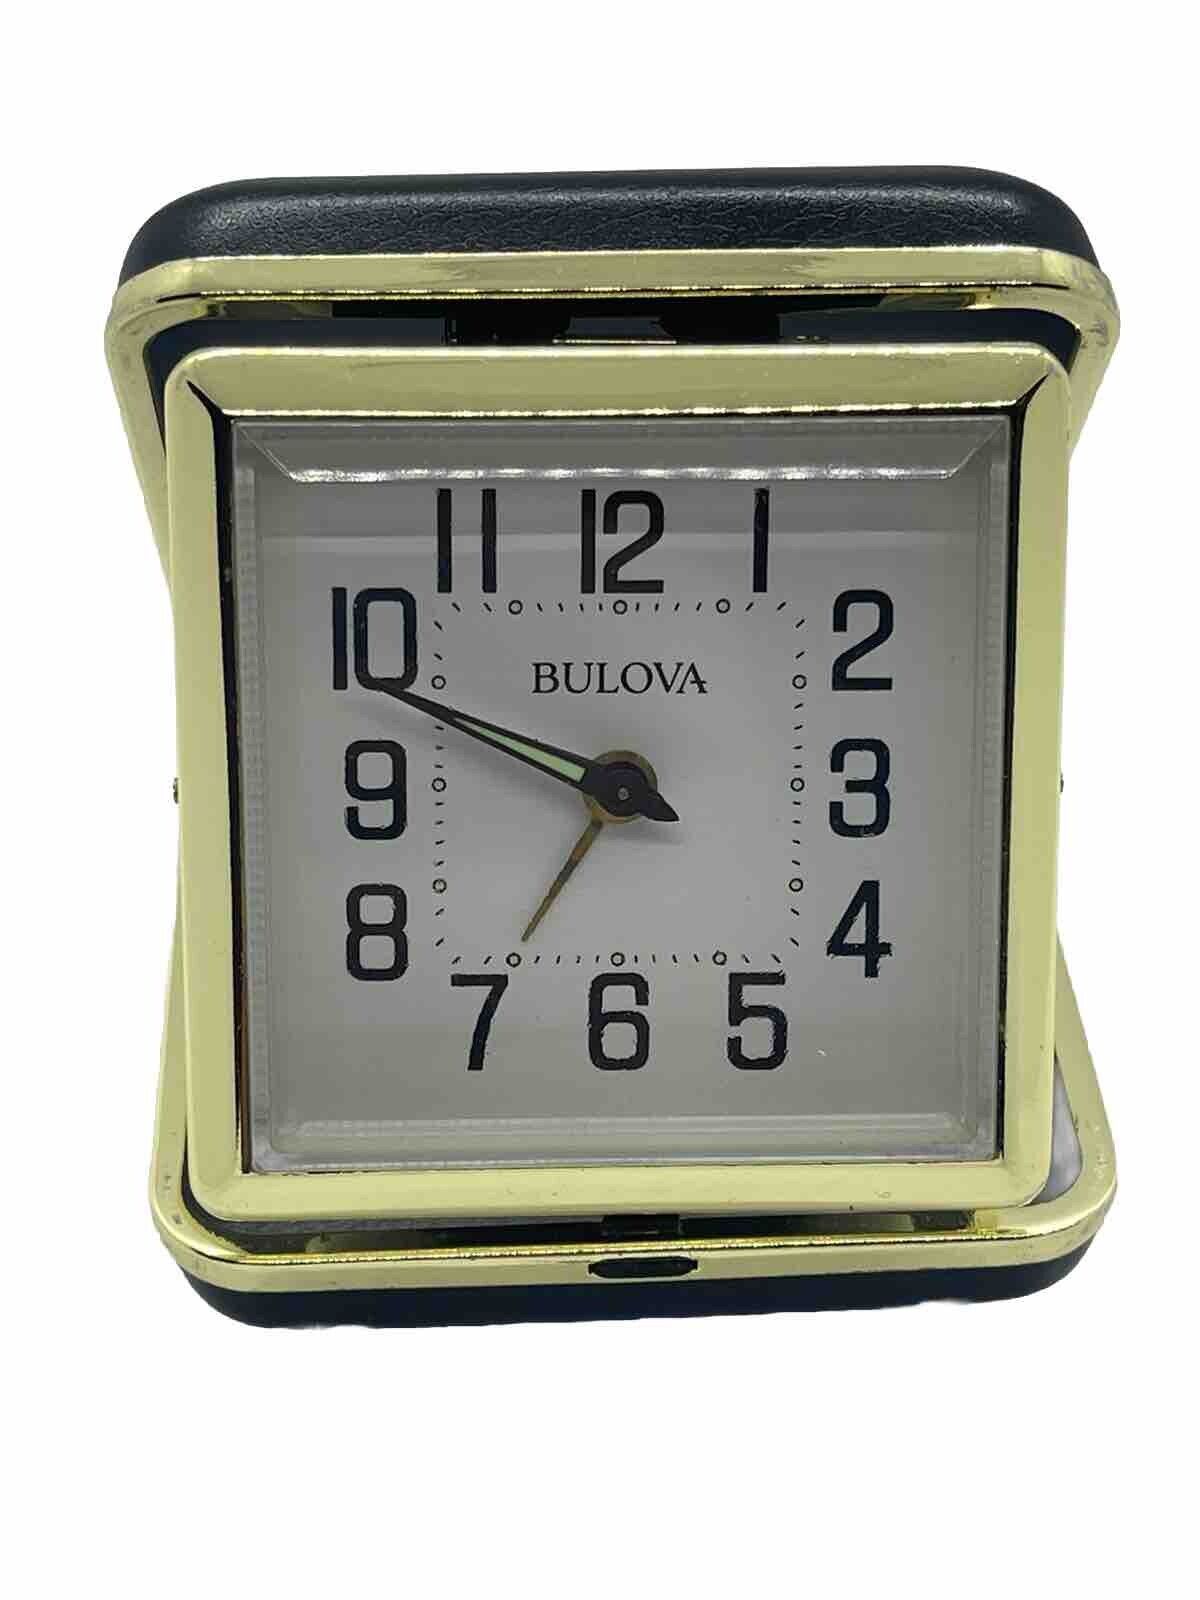 Vintage Bulova Travel Alarm Clock Wind-Up Gold/Black Leather Fold Up Case Tested